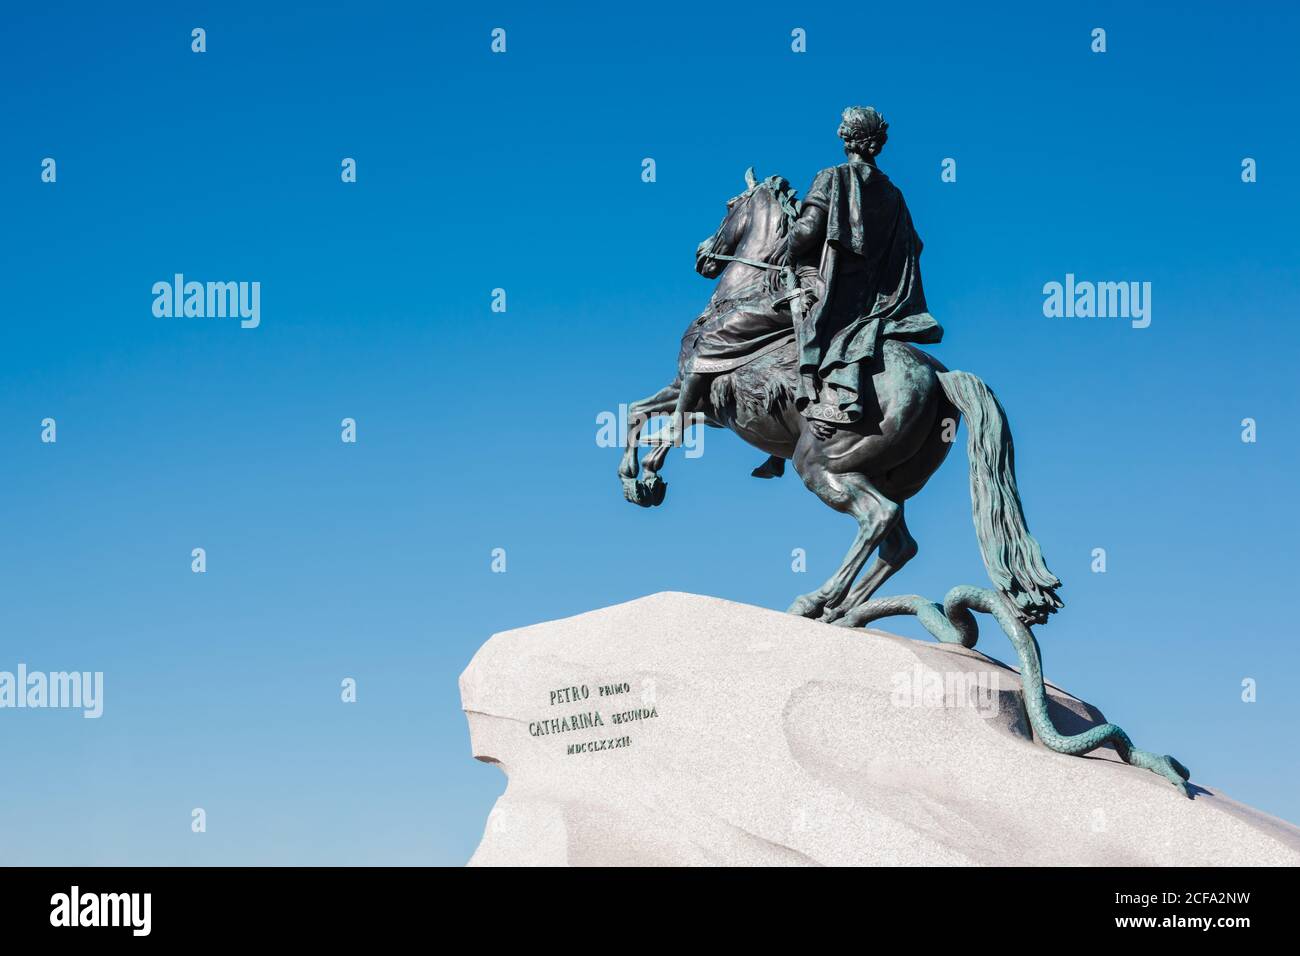 Das bronzene Reiterdenkmal, das Peter dem Rost, dem berühmten russischen Zaren und Kaiser gewidmet ist Stockfoto